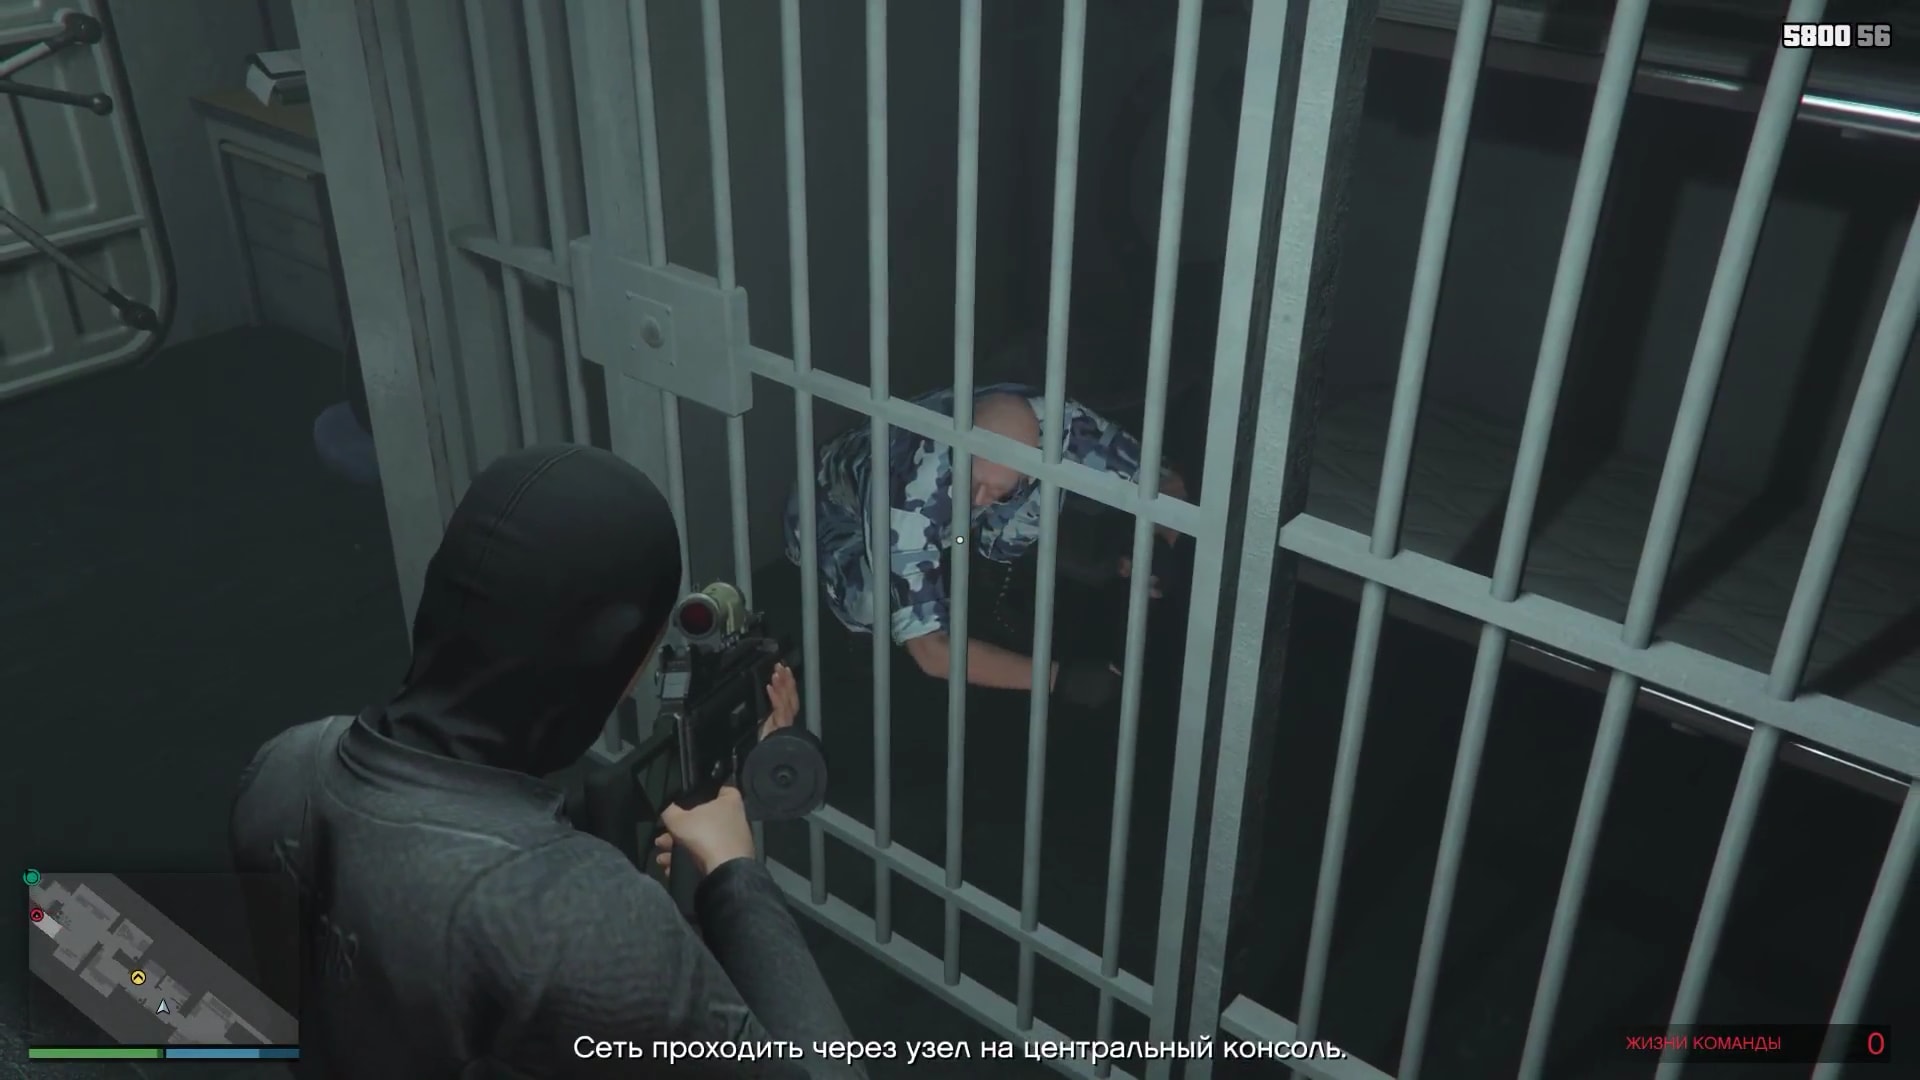 GTA Online: ограбление «Судный день» (акт 2 «Операция "Богдан"») — прохождение